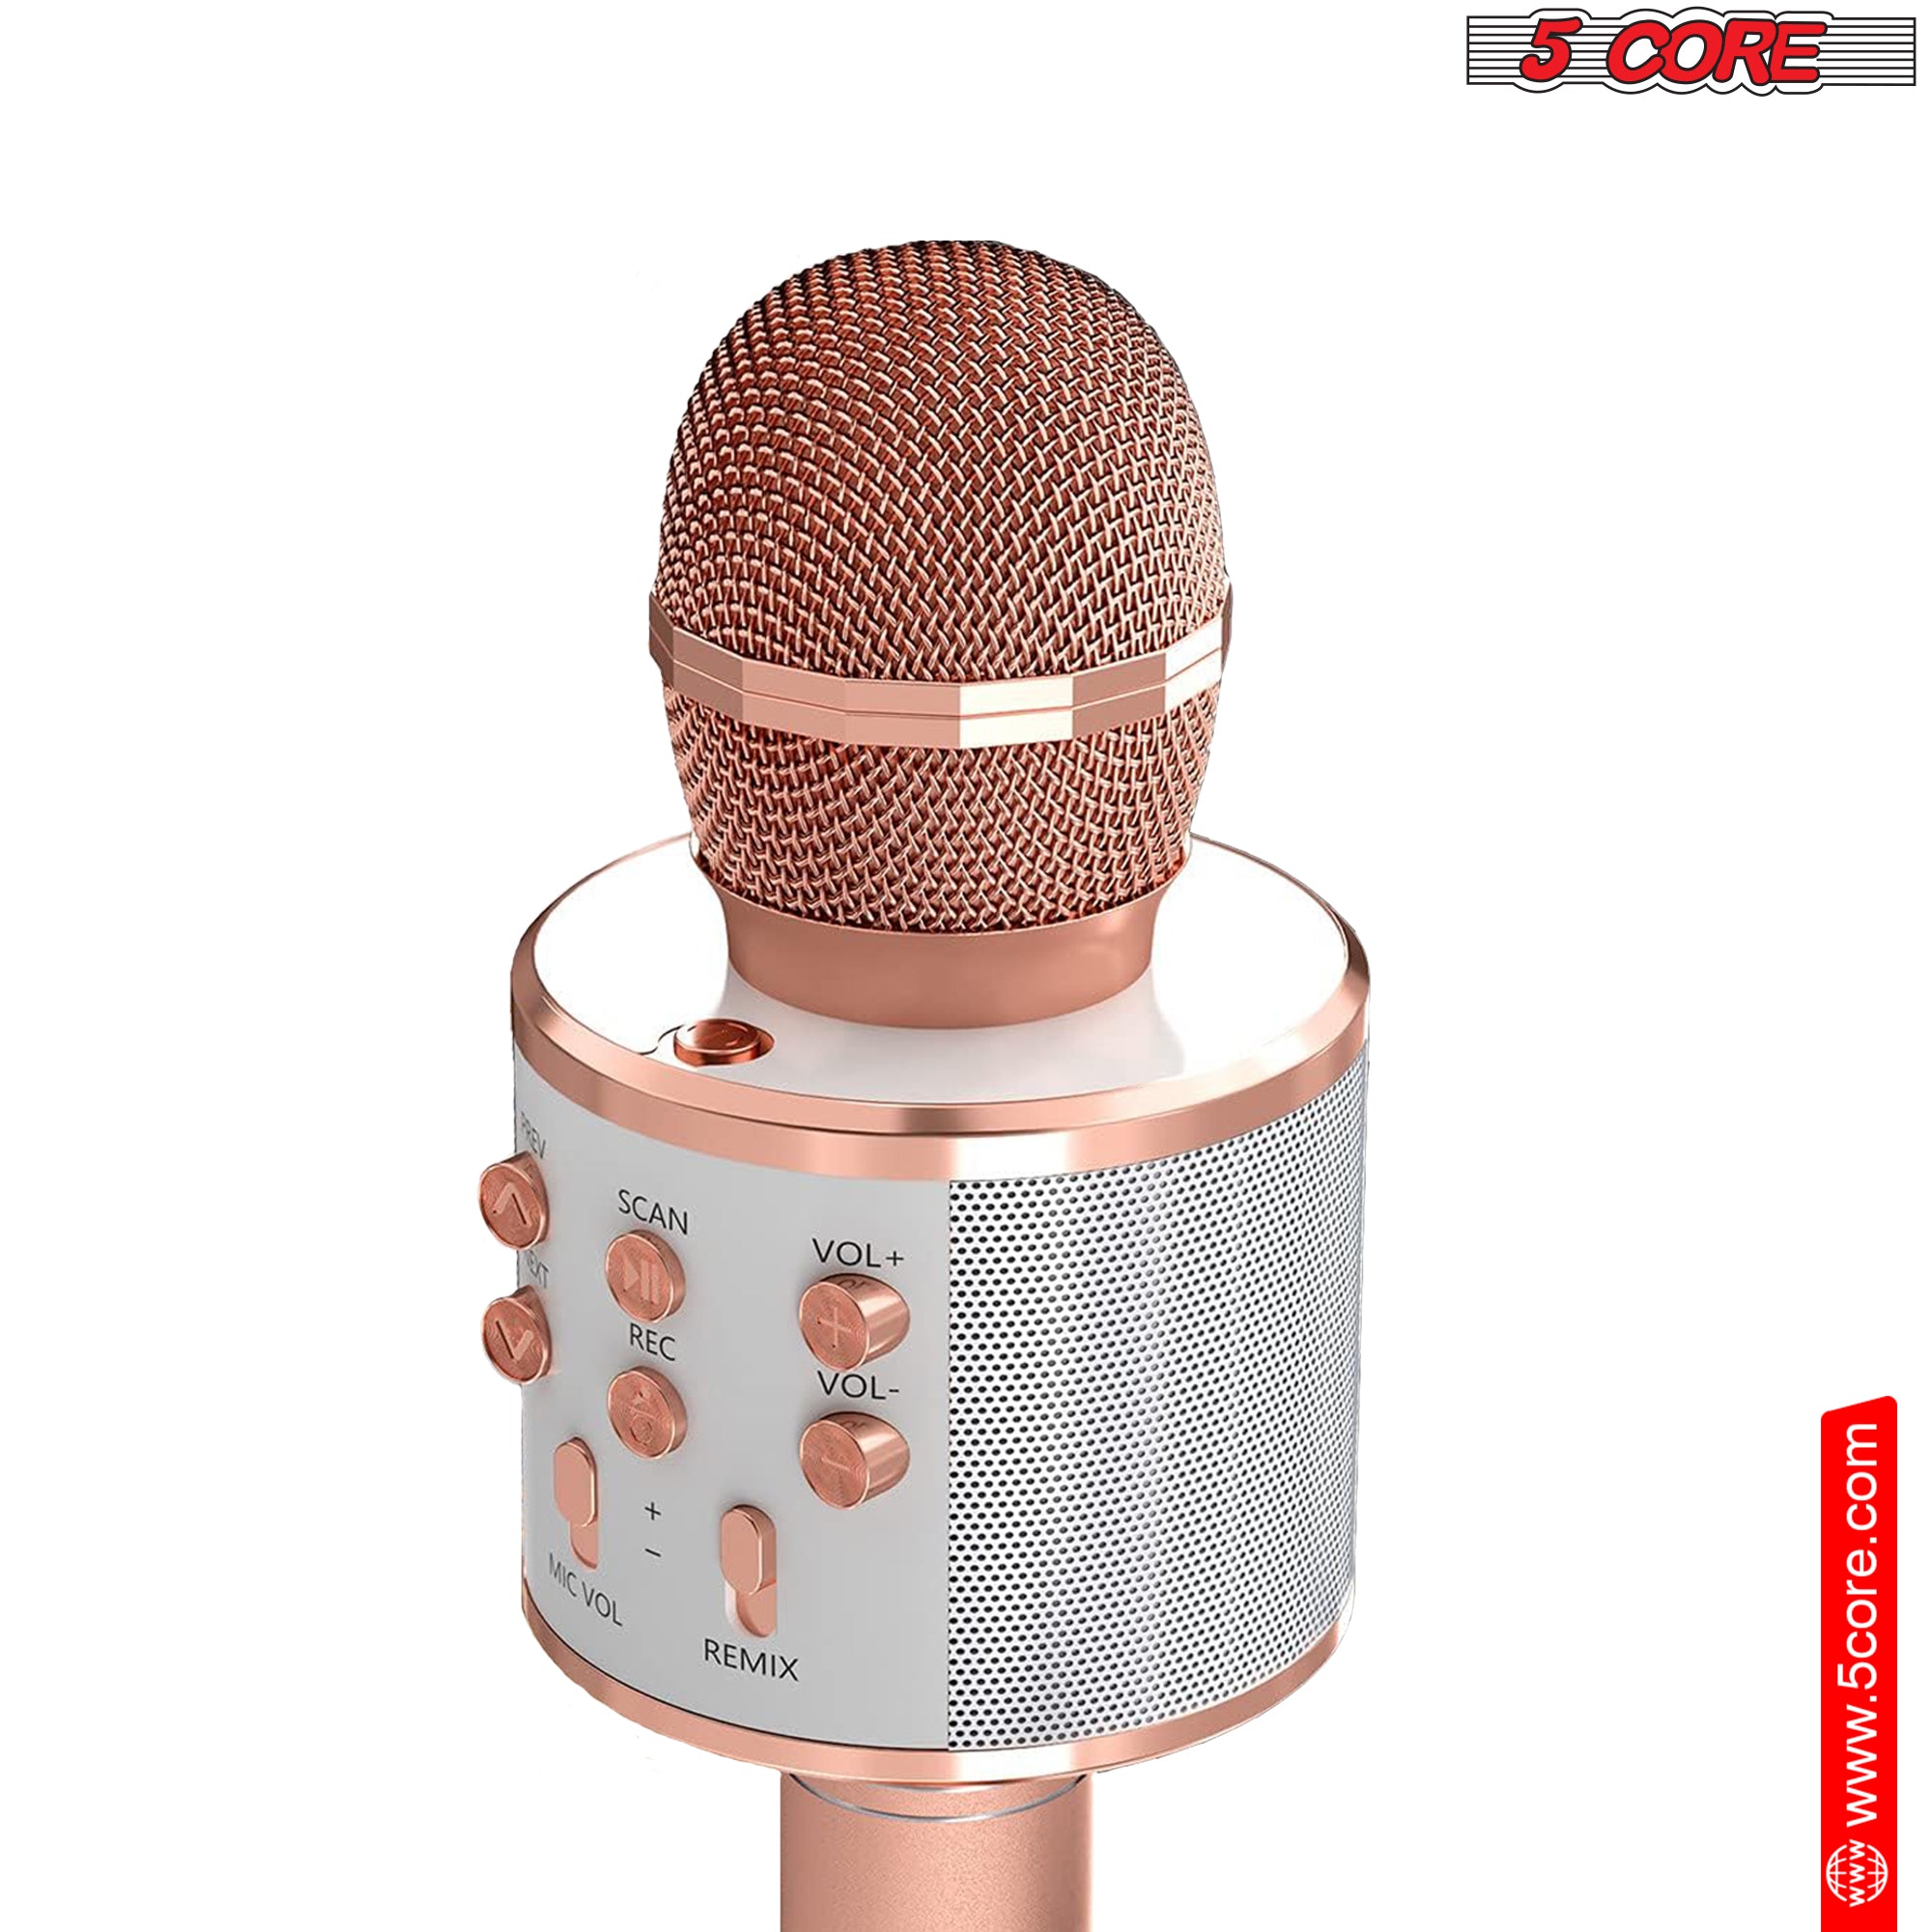 5 Core Karaoke Wireless Microphones